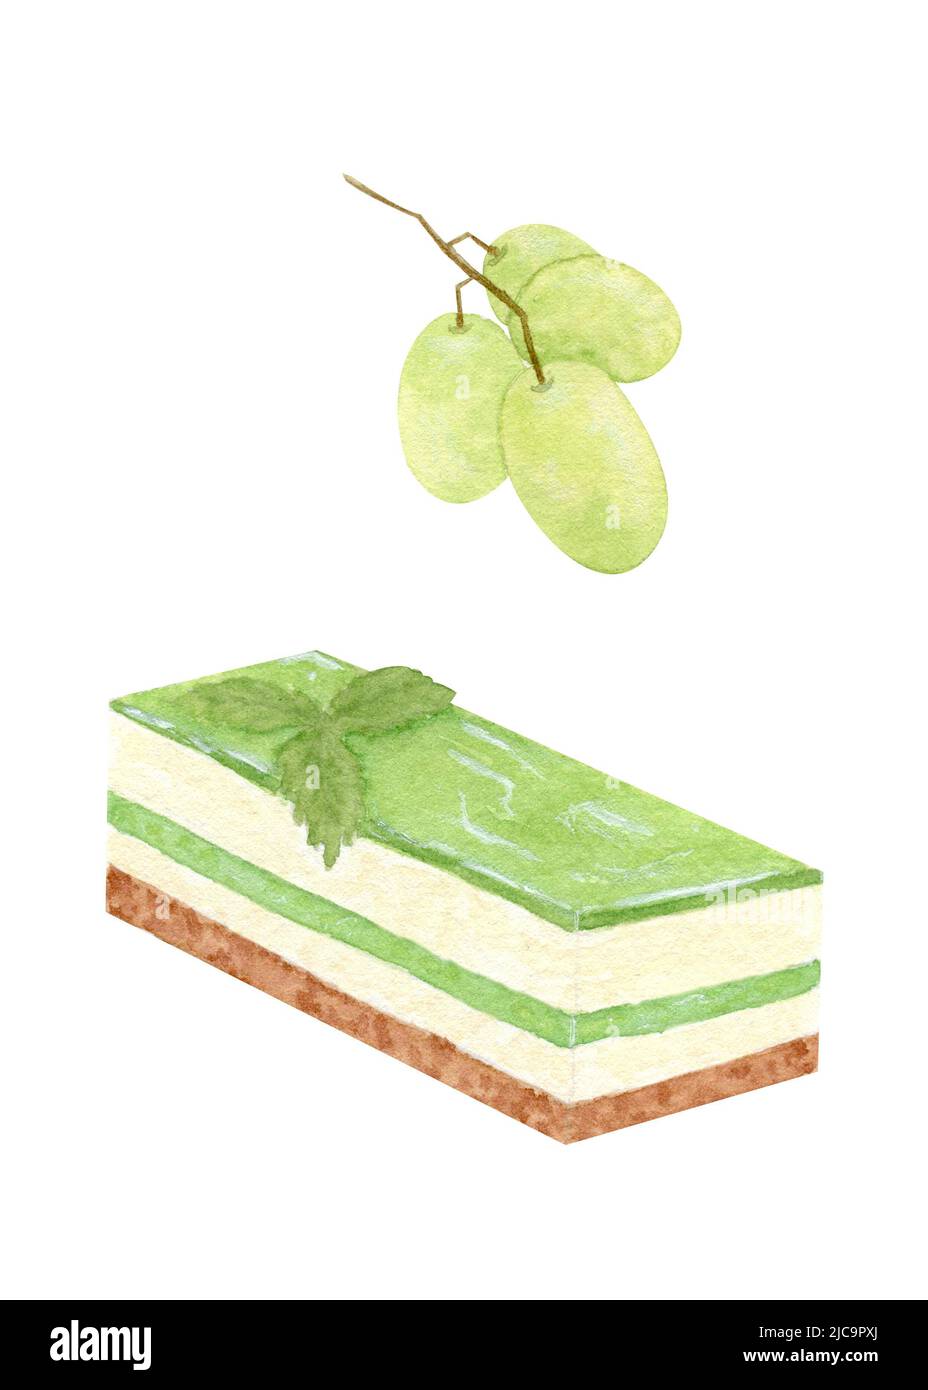 Gâteau aux fruits d'aquarelle. Gâteau de gelée à la crème de beurre et aux fruits fondants avec un bouquet de raisins verts. Isolé sur fond blanc. Banque D'Images